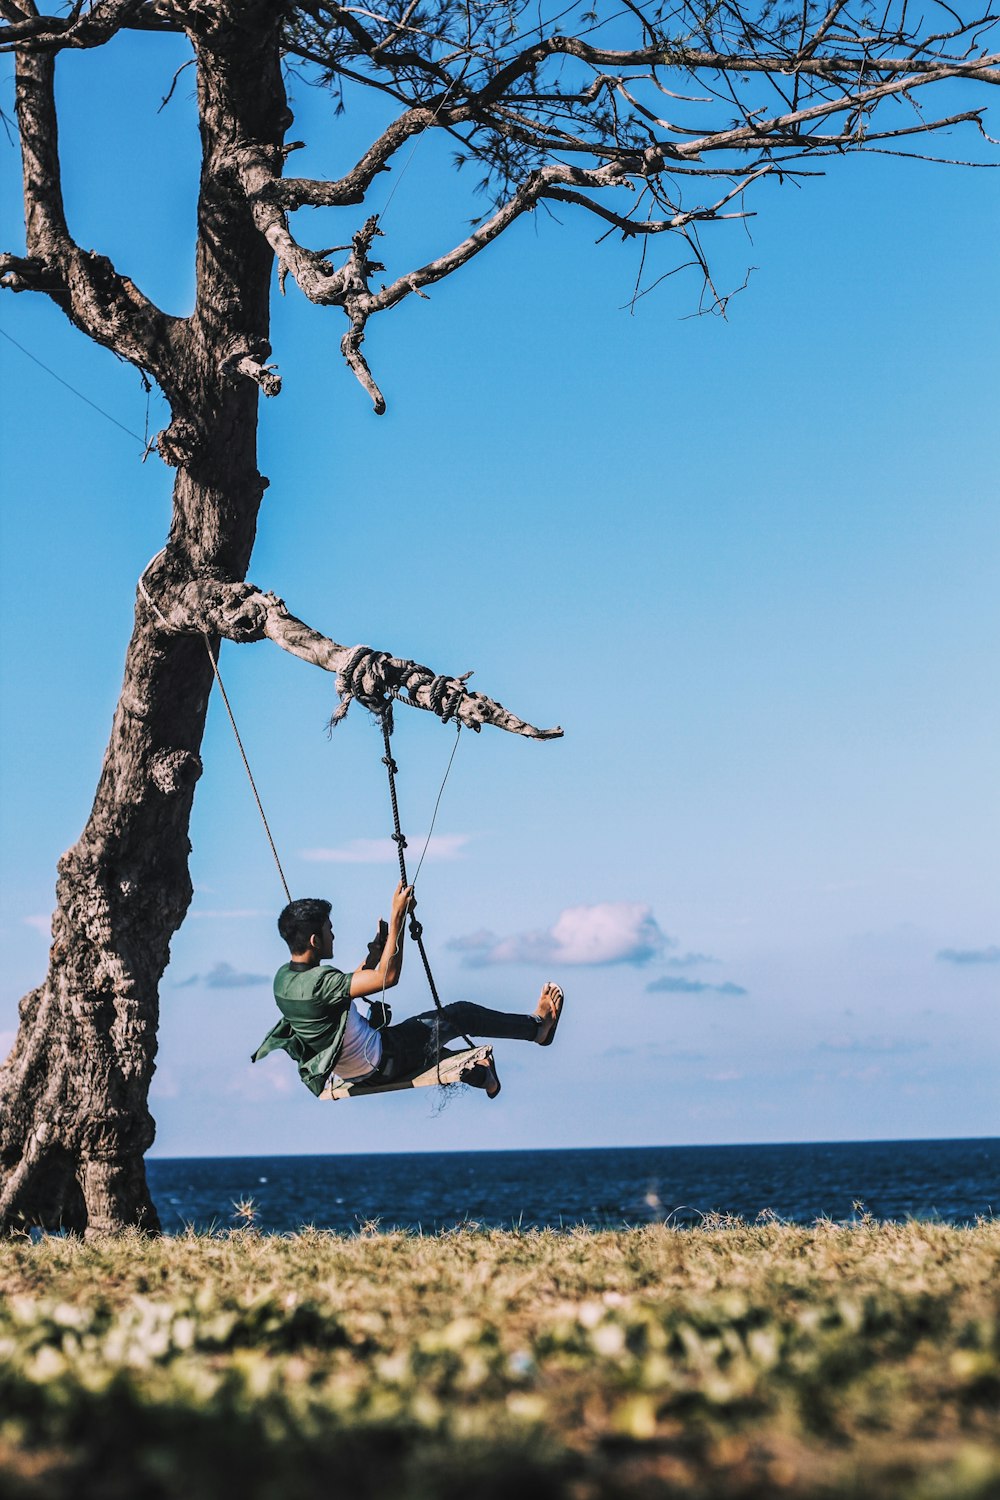 Mann auf Schaukel auf Baum in der Nähe eines Gewässers montiert